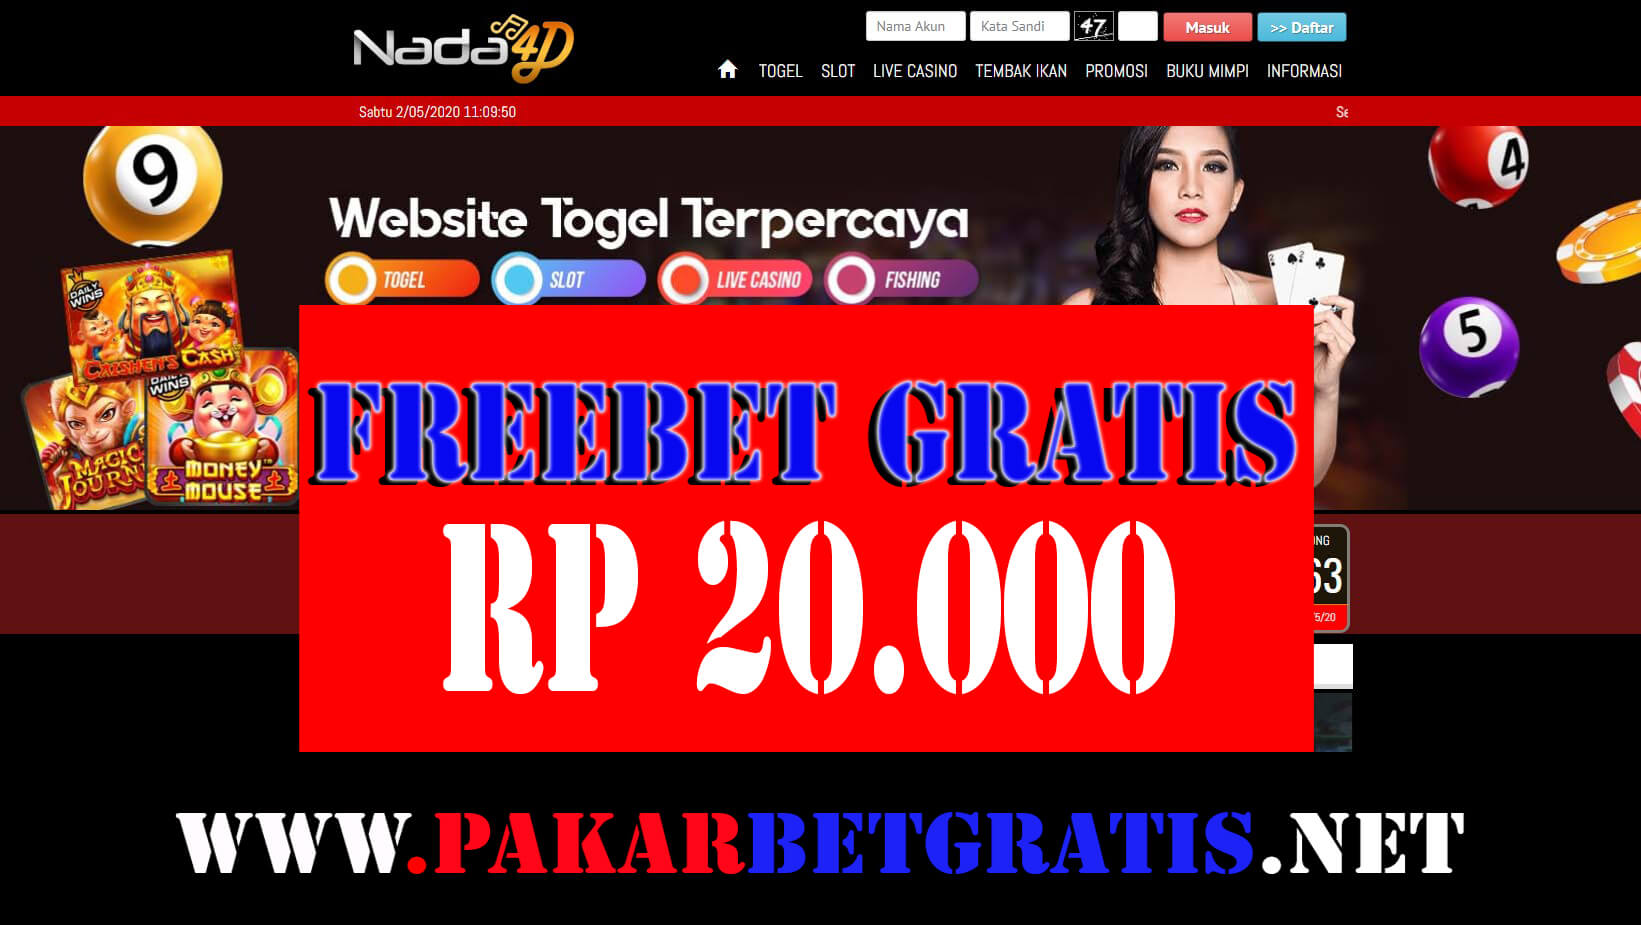 Nada4d Freebet gratis Rp 20.000 Tanpa deposit